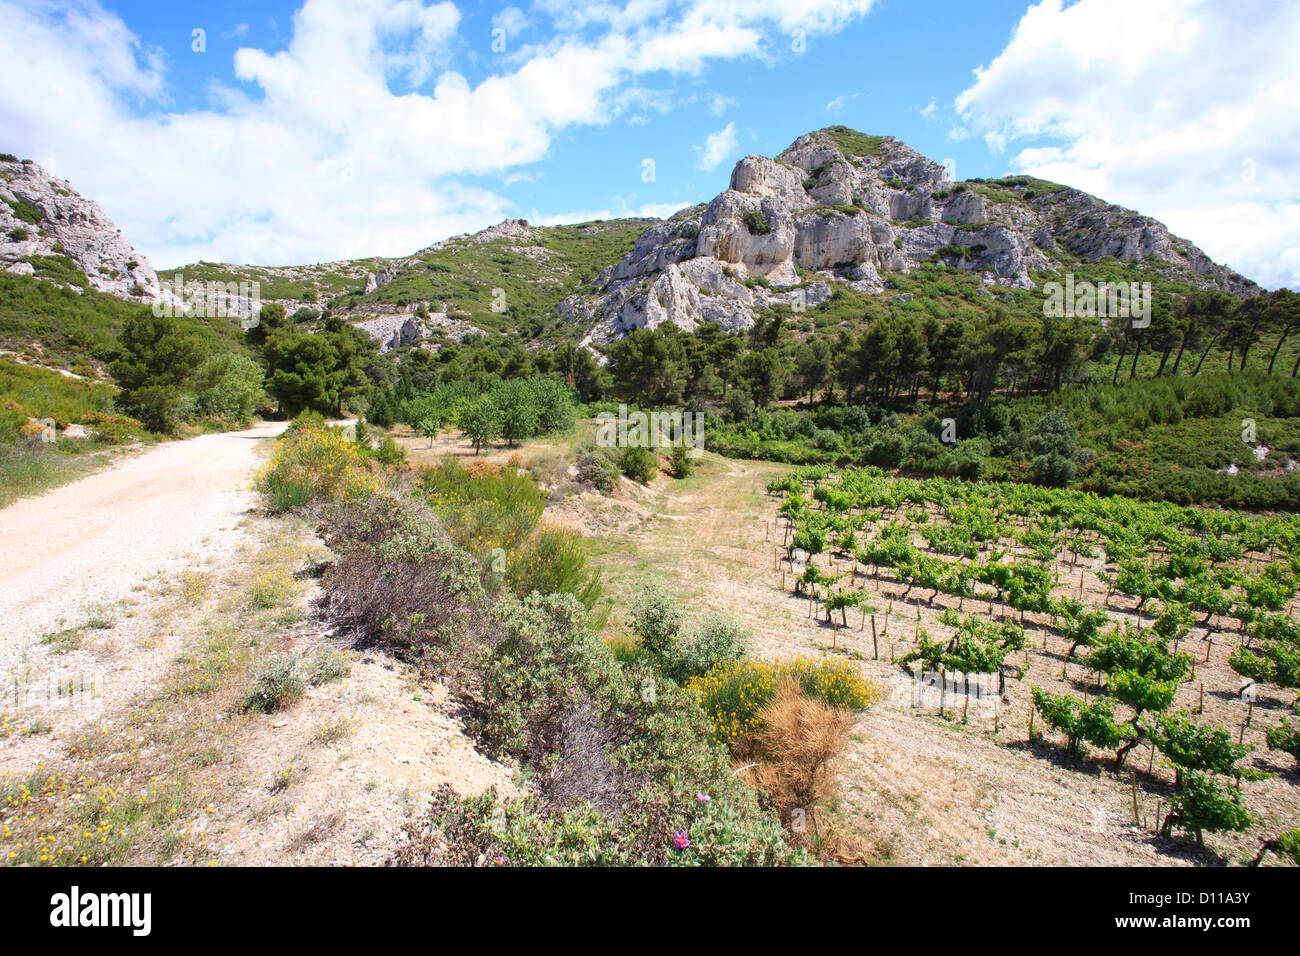 Vineyard and limestone hills. Chaîne des Alpilles, Bouches-du-Rhône, Provence, France. June. Stock Photo